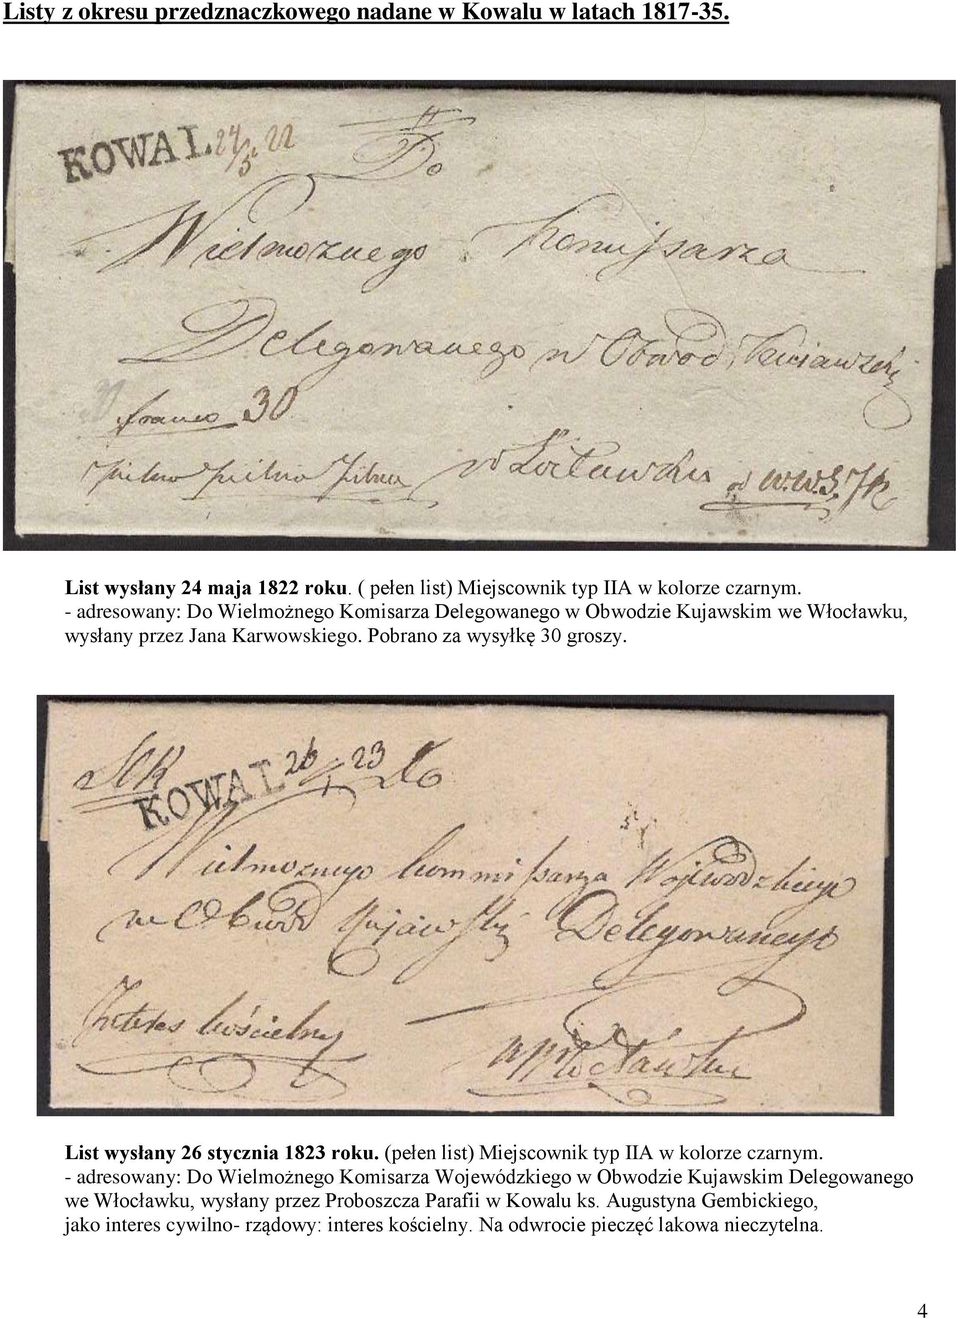 List wysłany 26 stycznia 1823 roku. (pełen list) Miejscownik typ IIA w kolorze czarnym.